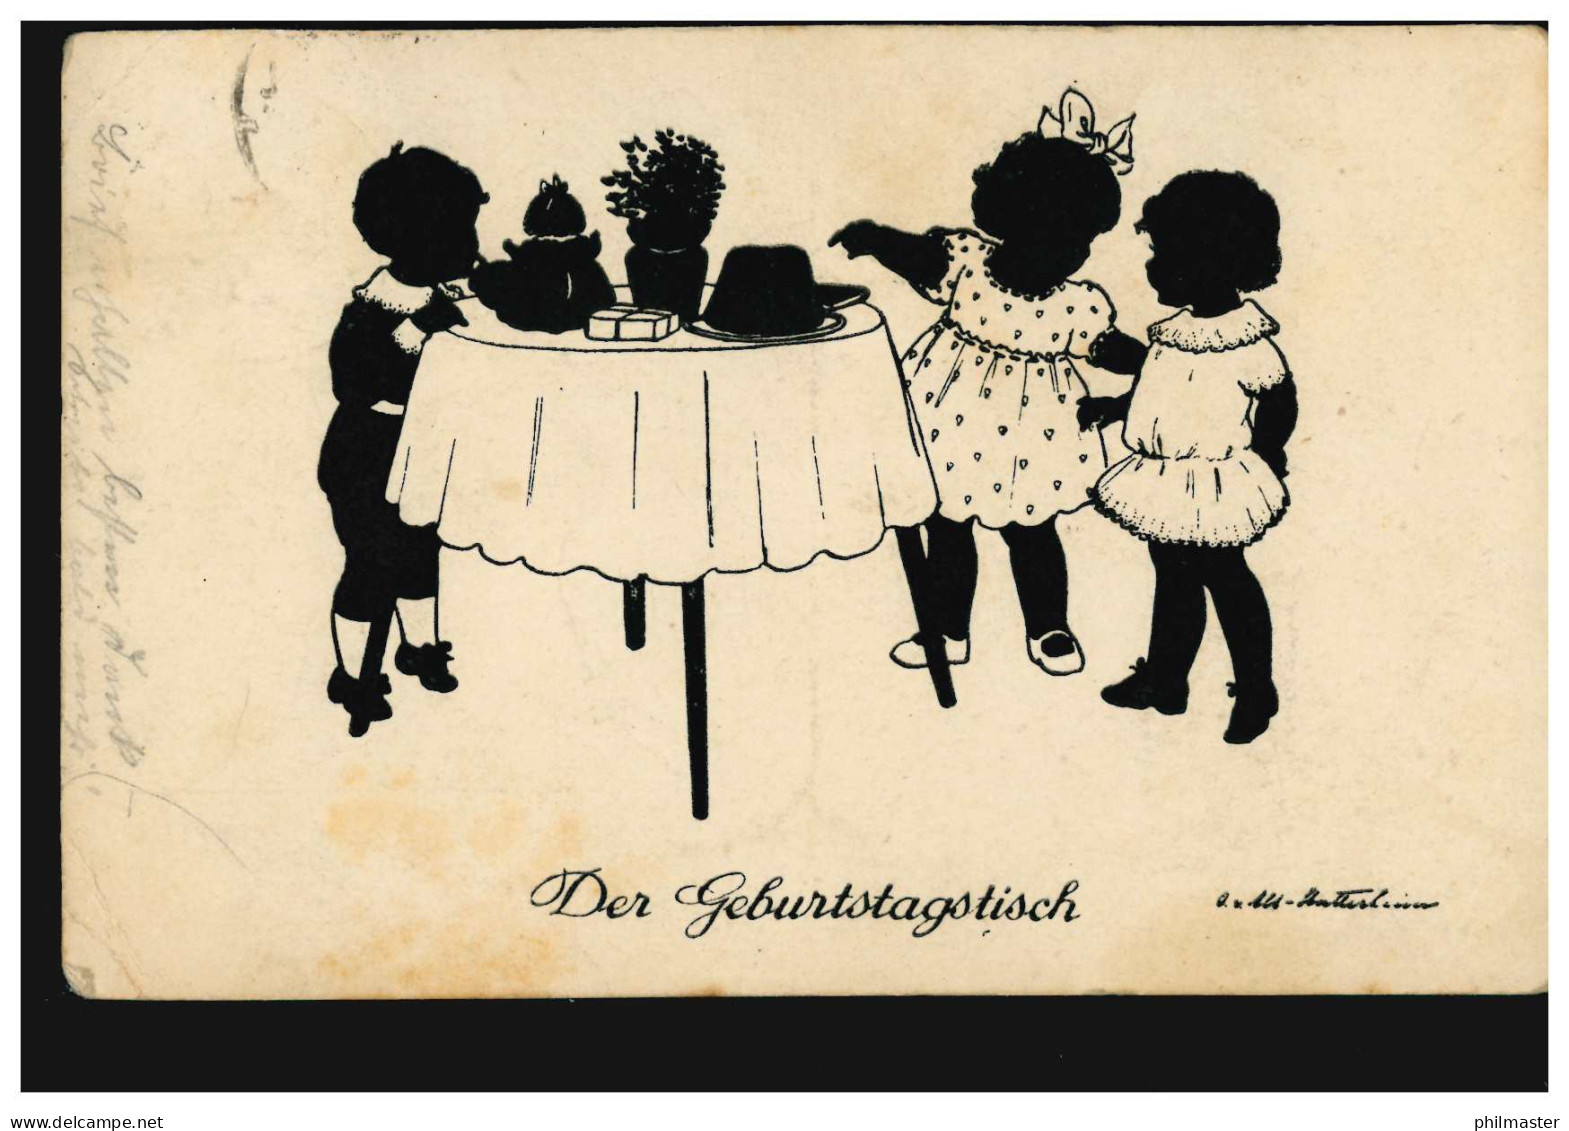 Scherenschnitt-AK Der Geburtstagstisch, Verlag G.K.V. Berlin, RHEYDT 23.6.1926 - Silueta